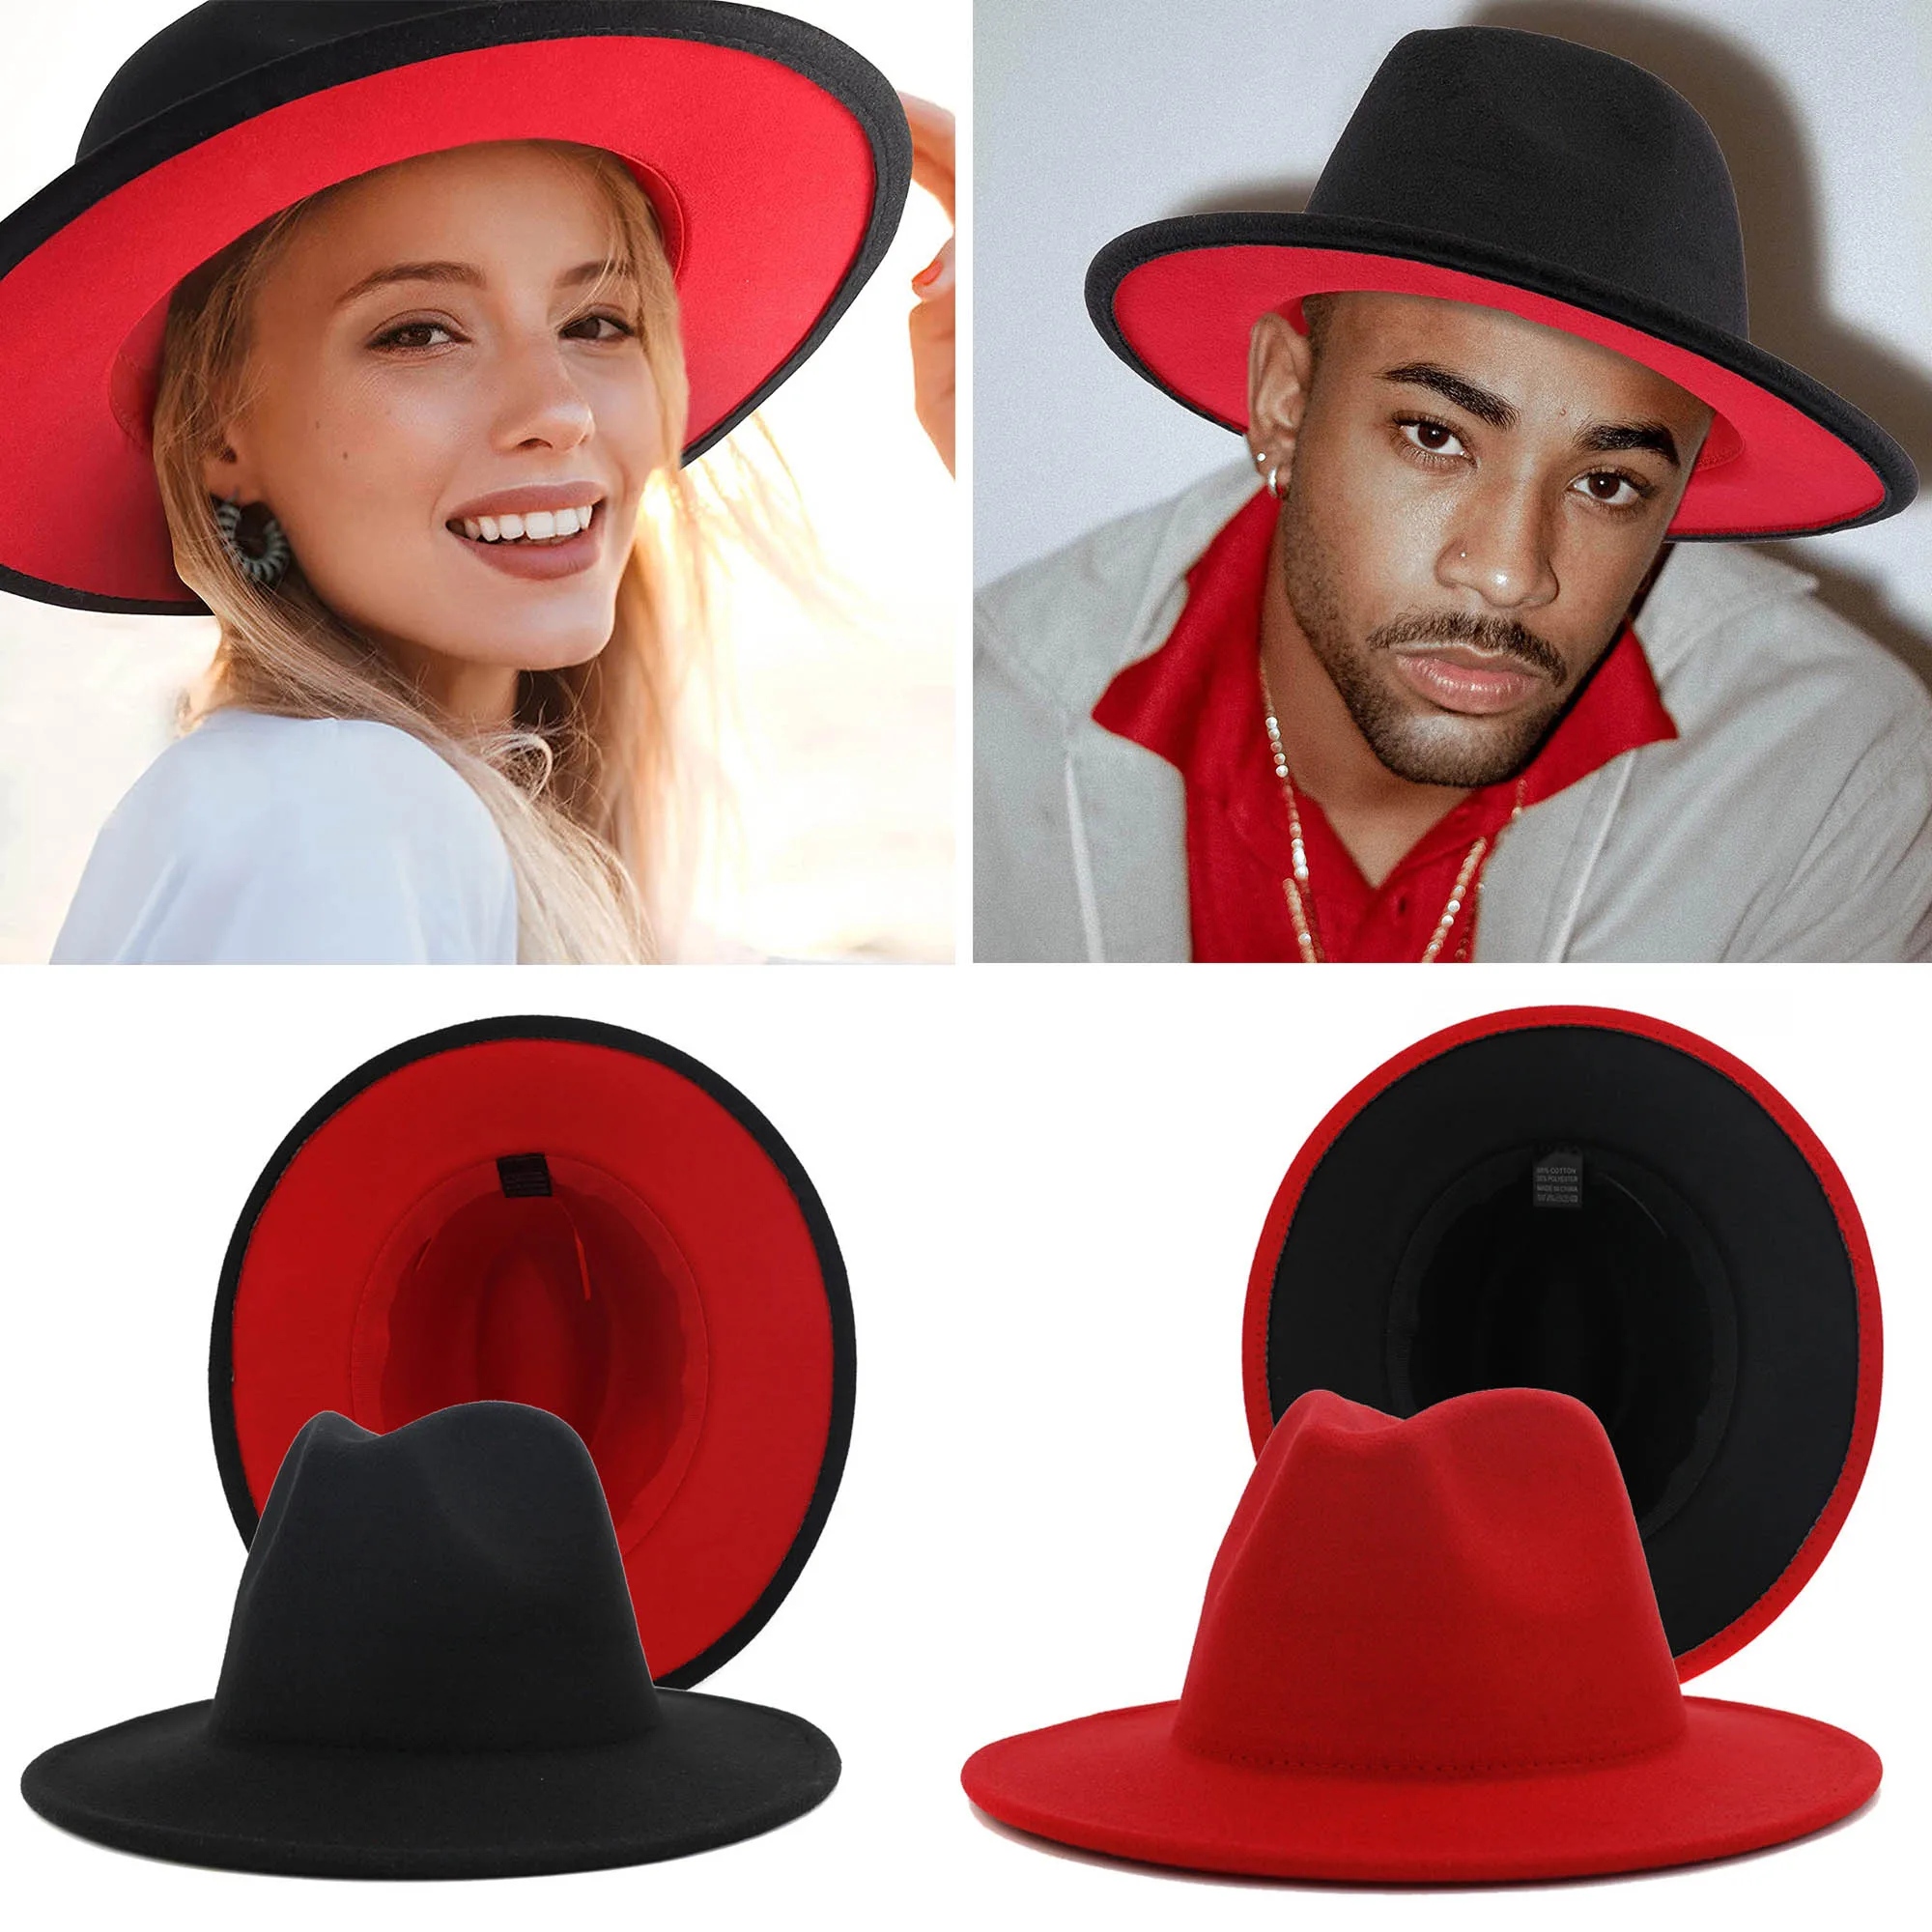 2021 Yeni Unisex Siyah Kırmızı Patchwork Yün fötr şapka Kap Erkekler Kadınlar Düz Ağız Karışımı Üst Caz Şapka Panama Fötr Vintage Şapka